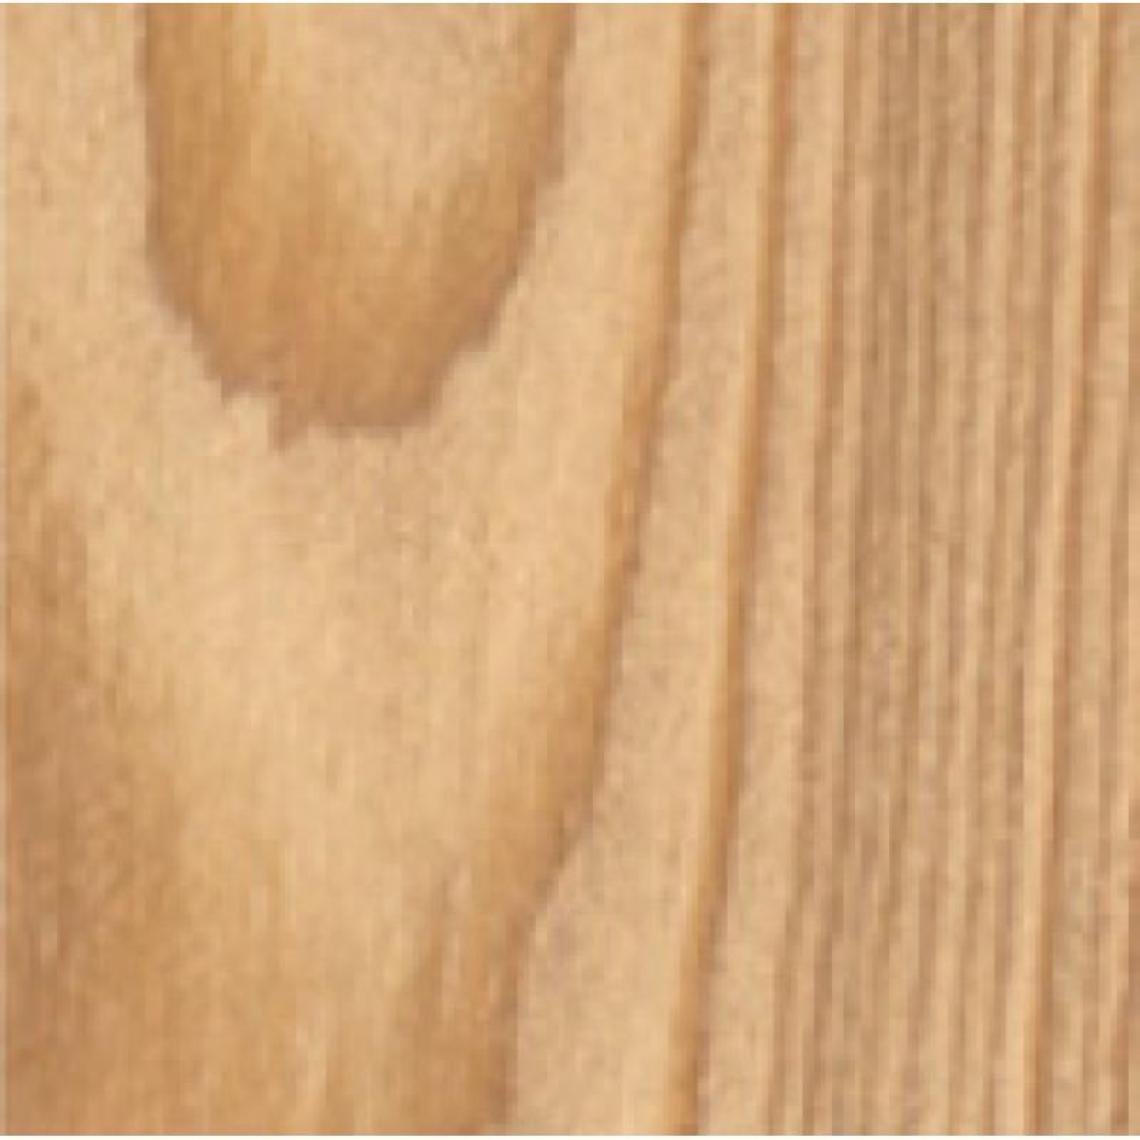 Blanchon - Lasures Aqua Polyuréthane Tech-Wood teinte bois grisé bidon de 1 - Produit de finition pour bois